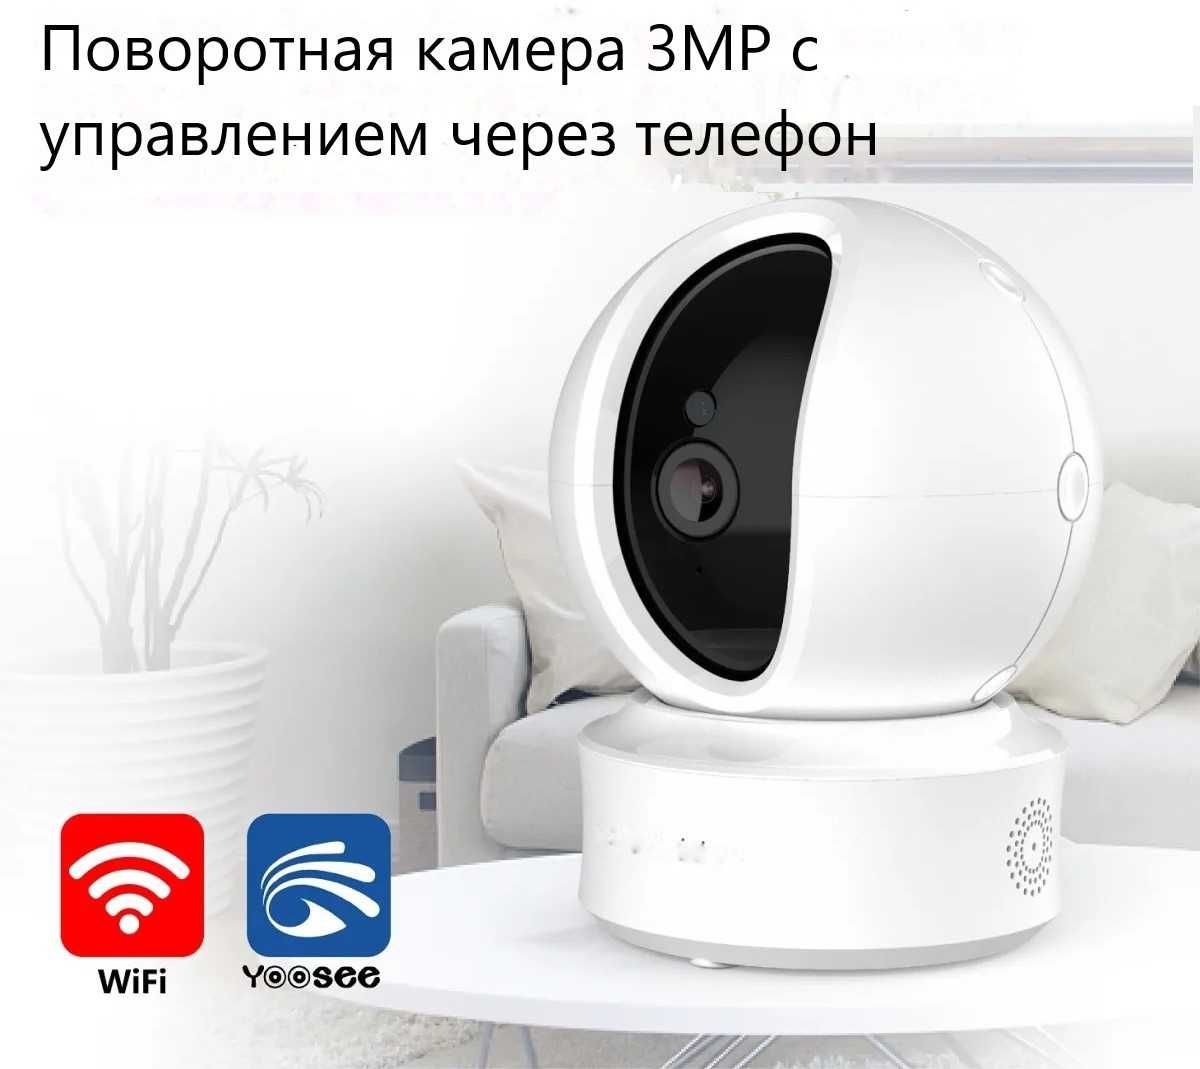 Wi-Fi Поворотная Интернет Камера 3MP c широким углом обзора